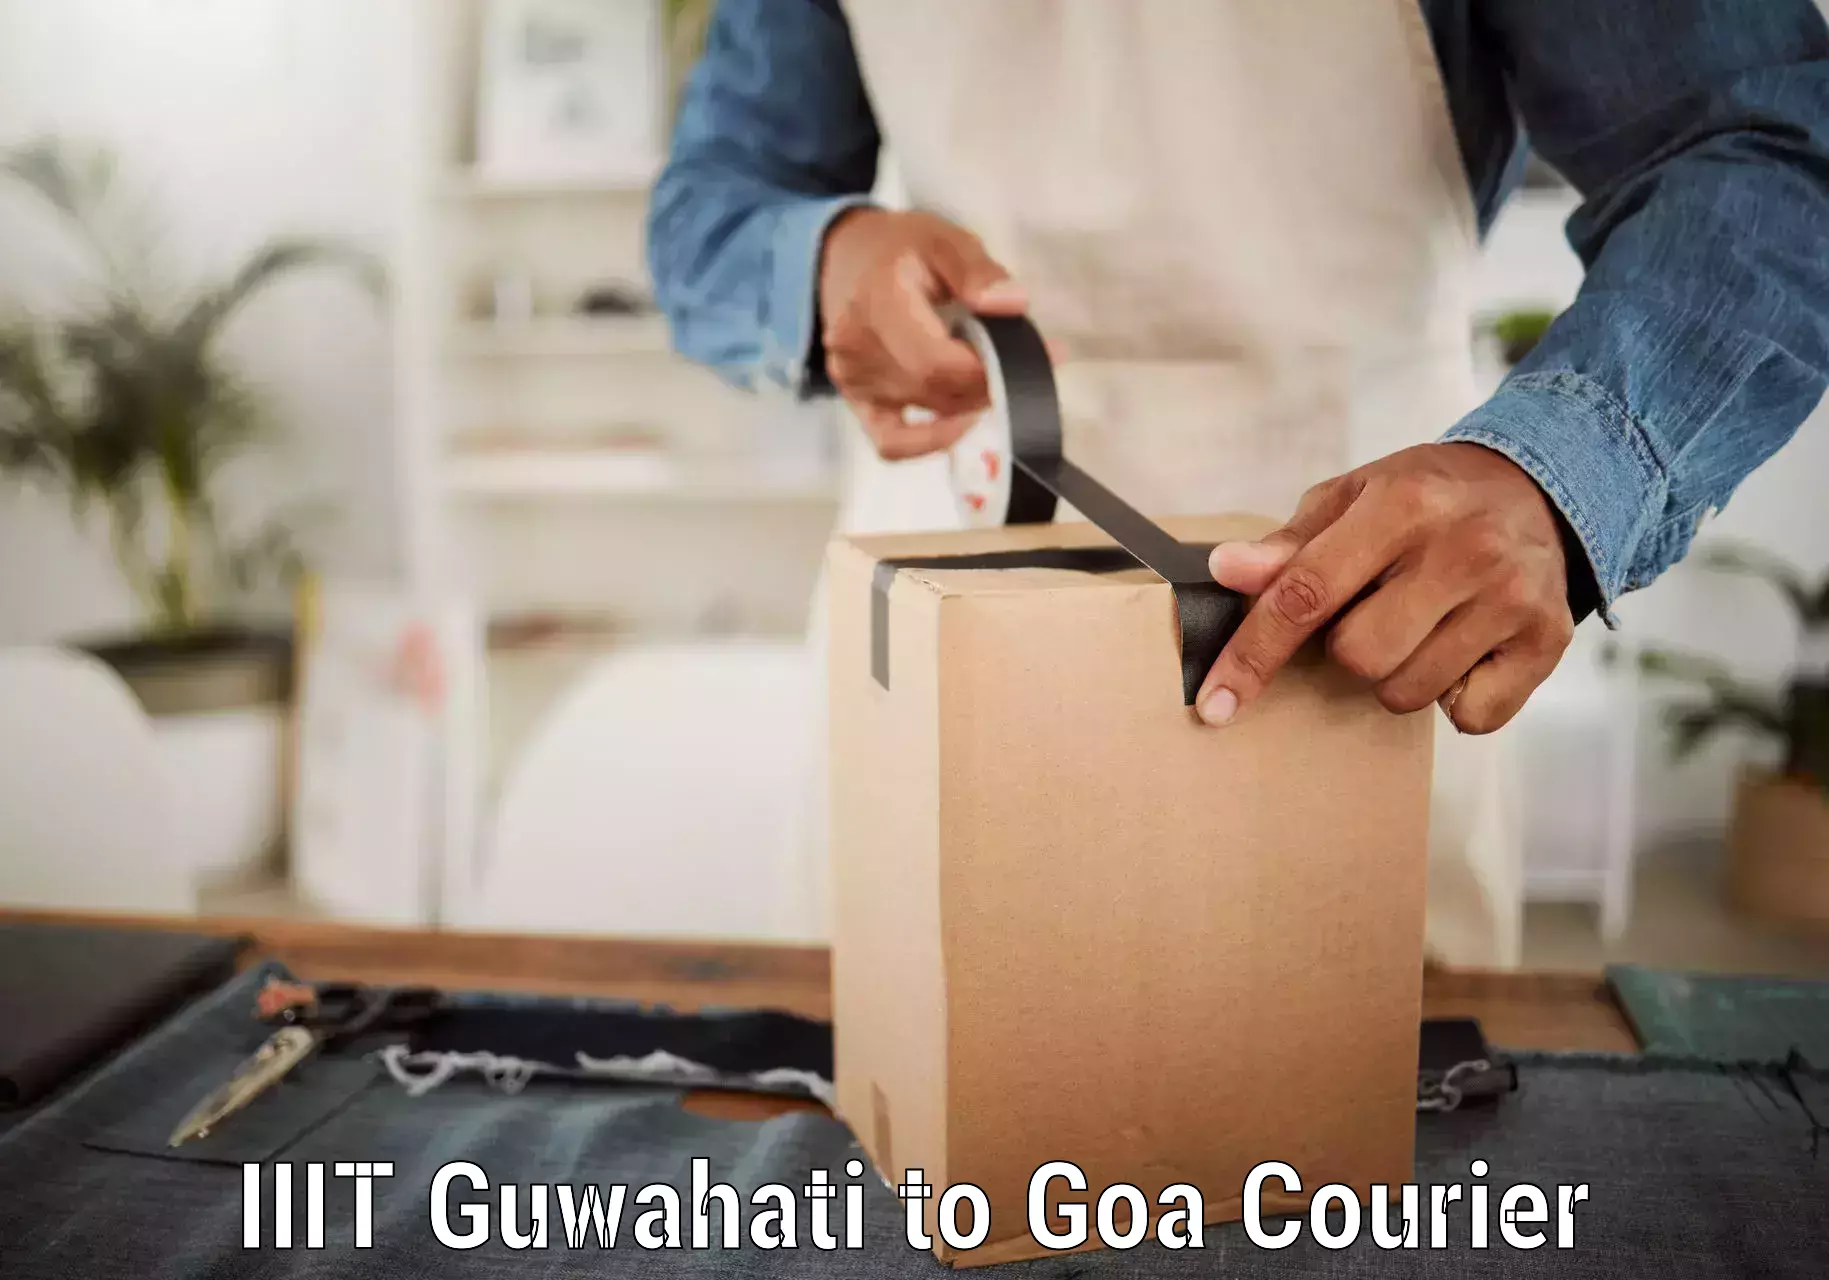 Easy return solutions IIIT Guwahati to IIT Goa